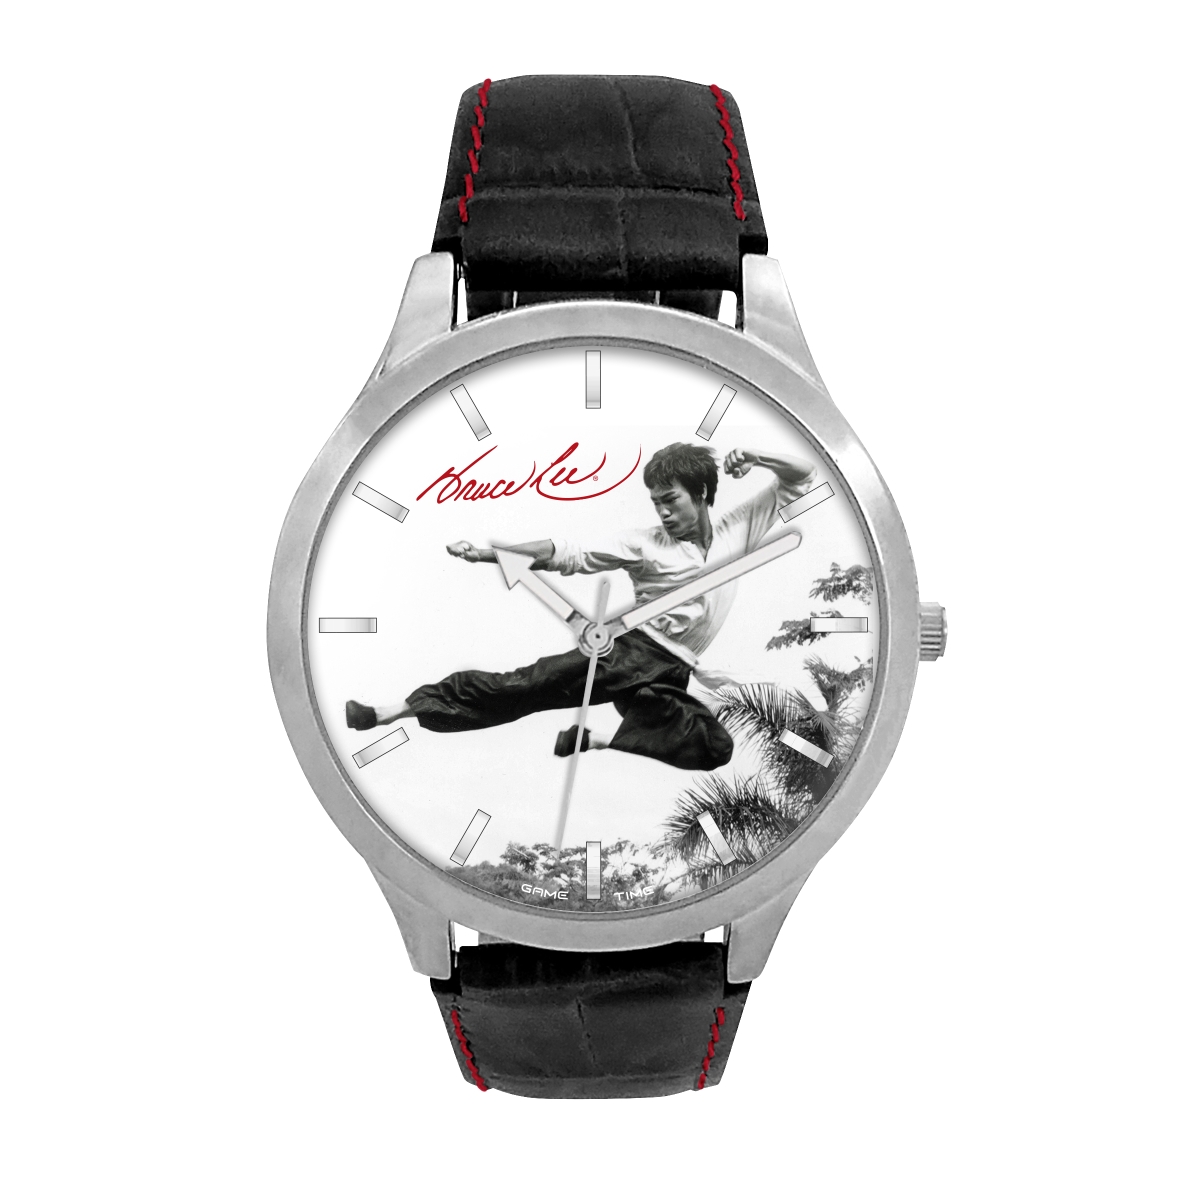 Gametime Blee-pik-fly Black Series Bruce Lee Flying Man Pioneer Watch